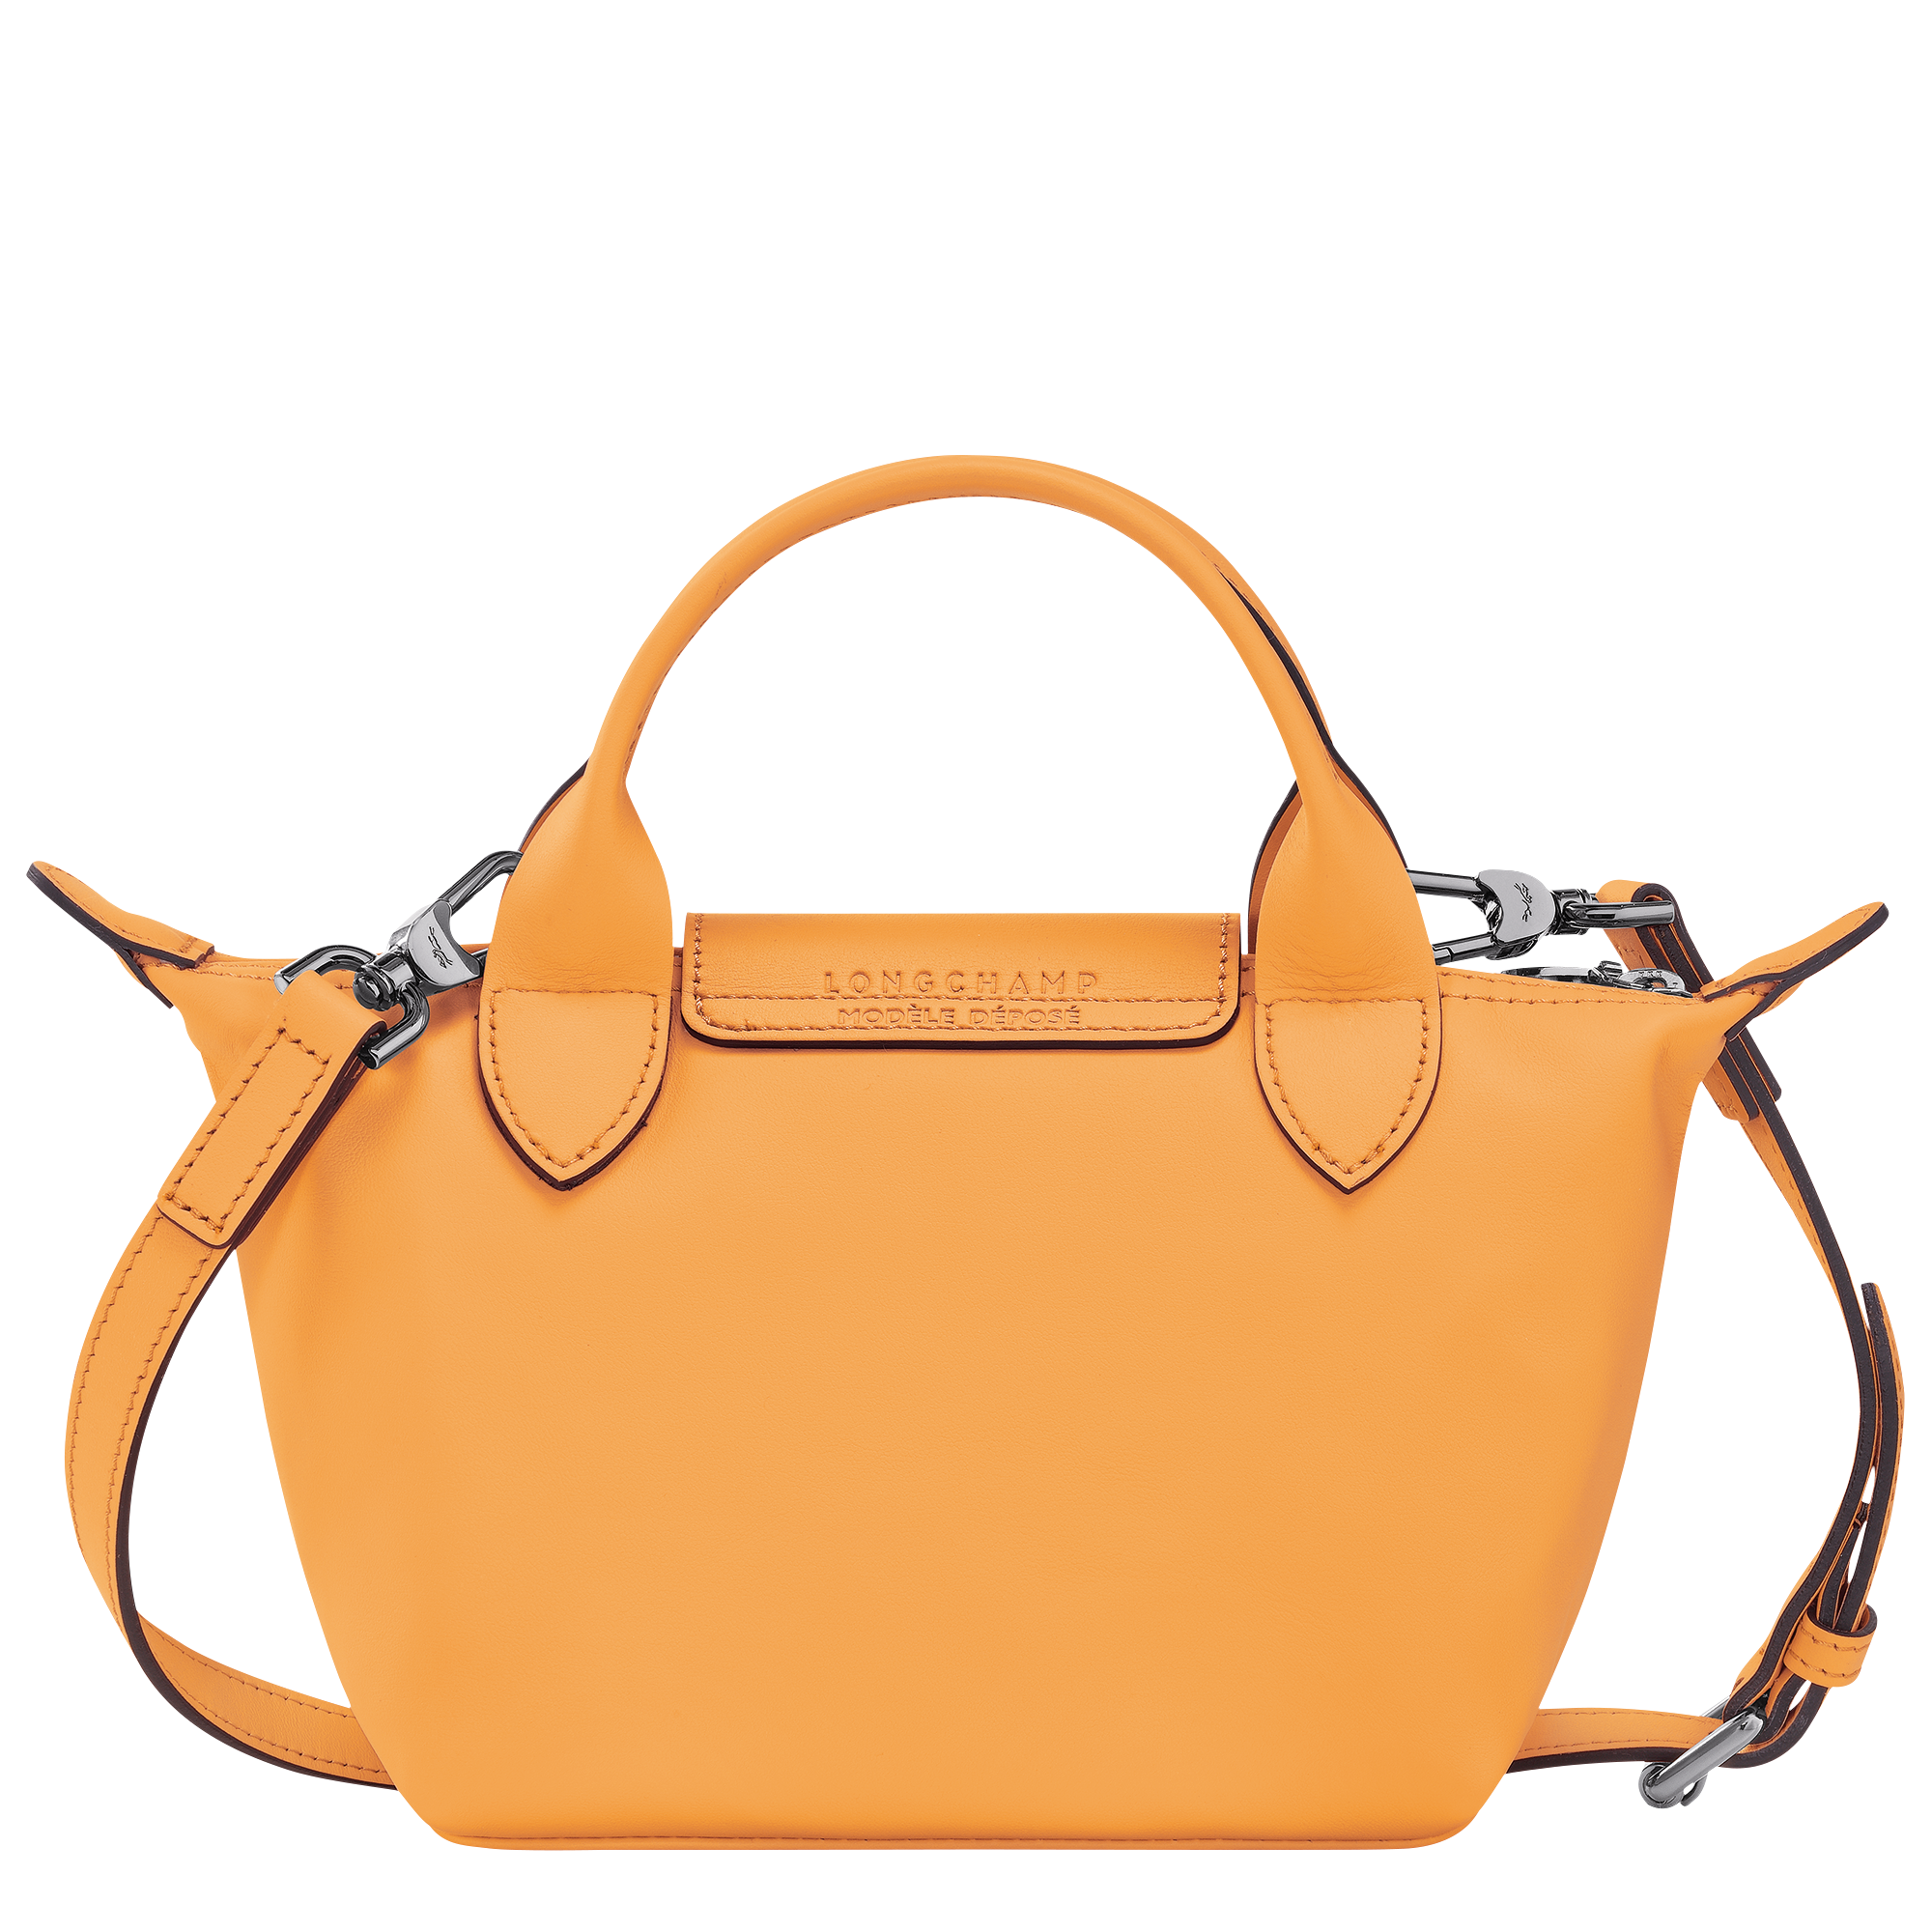 Le Pliage Xtra Handbag XS, Apricot